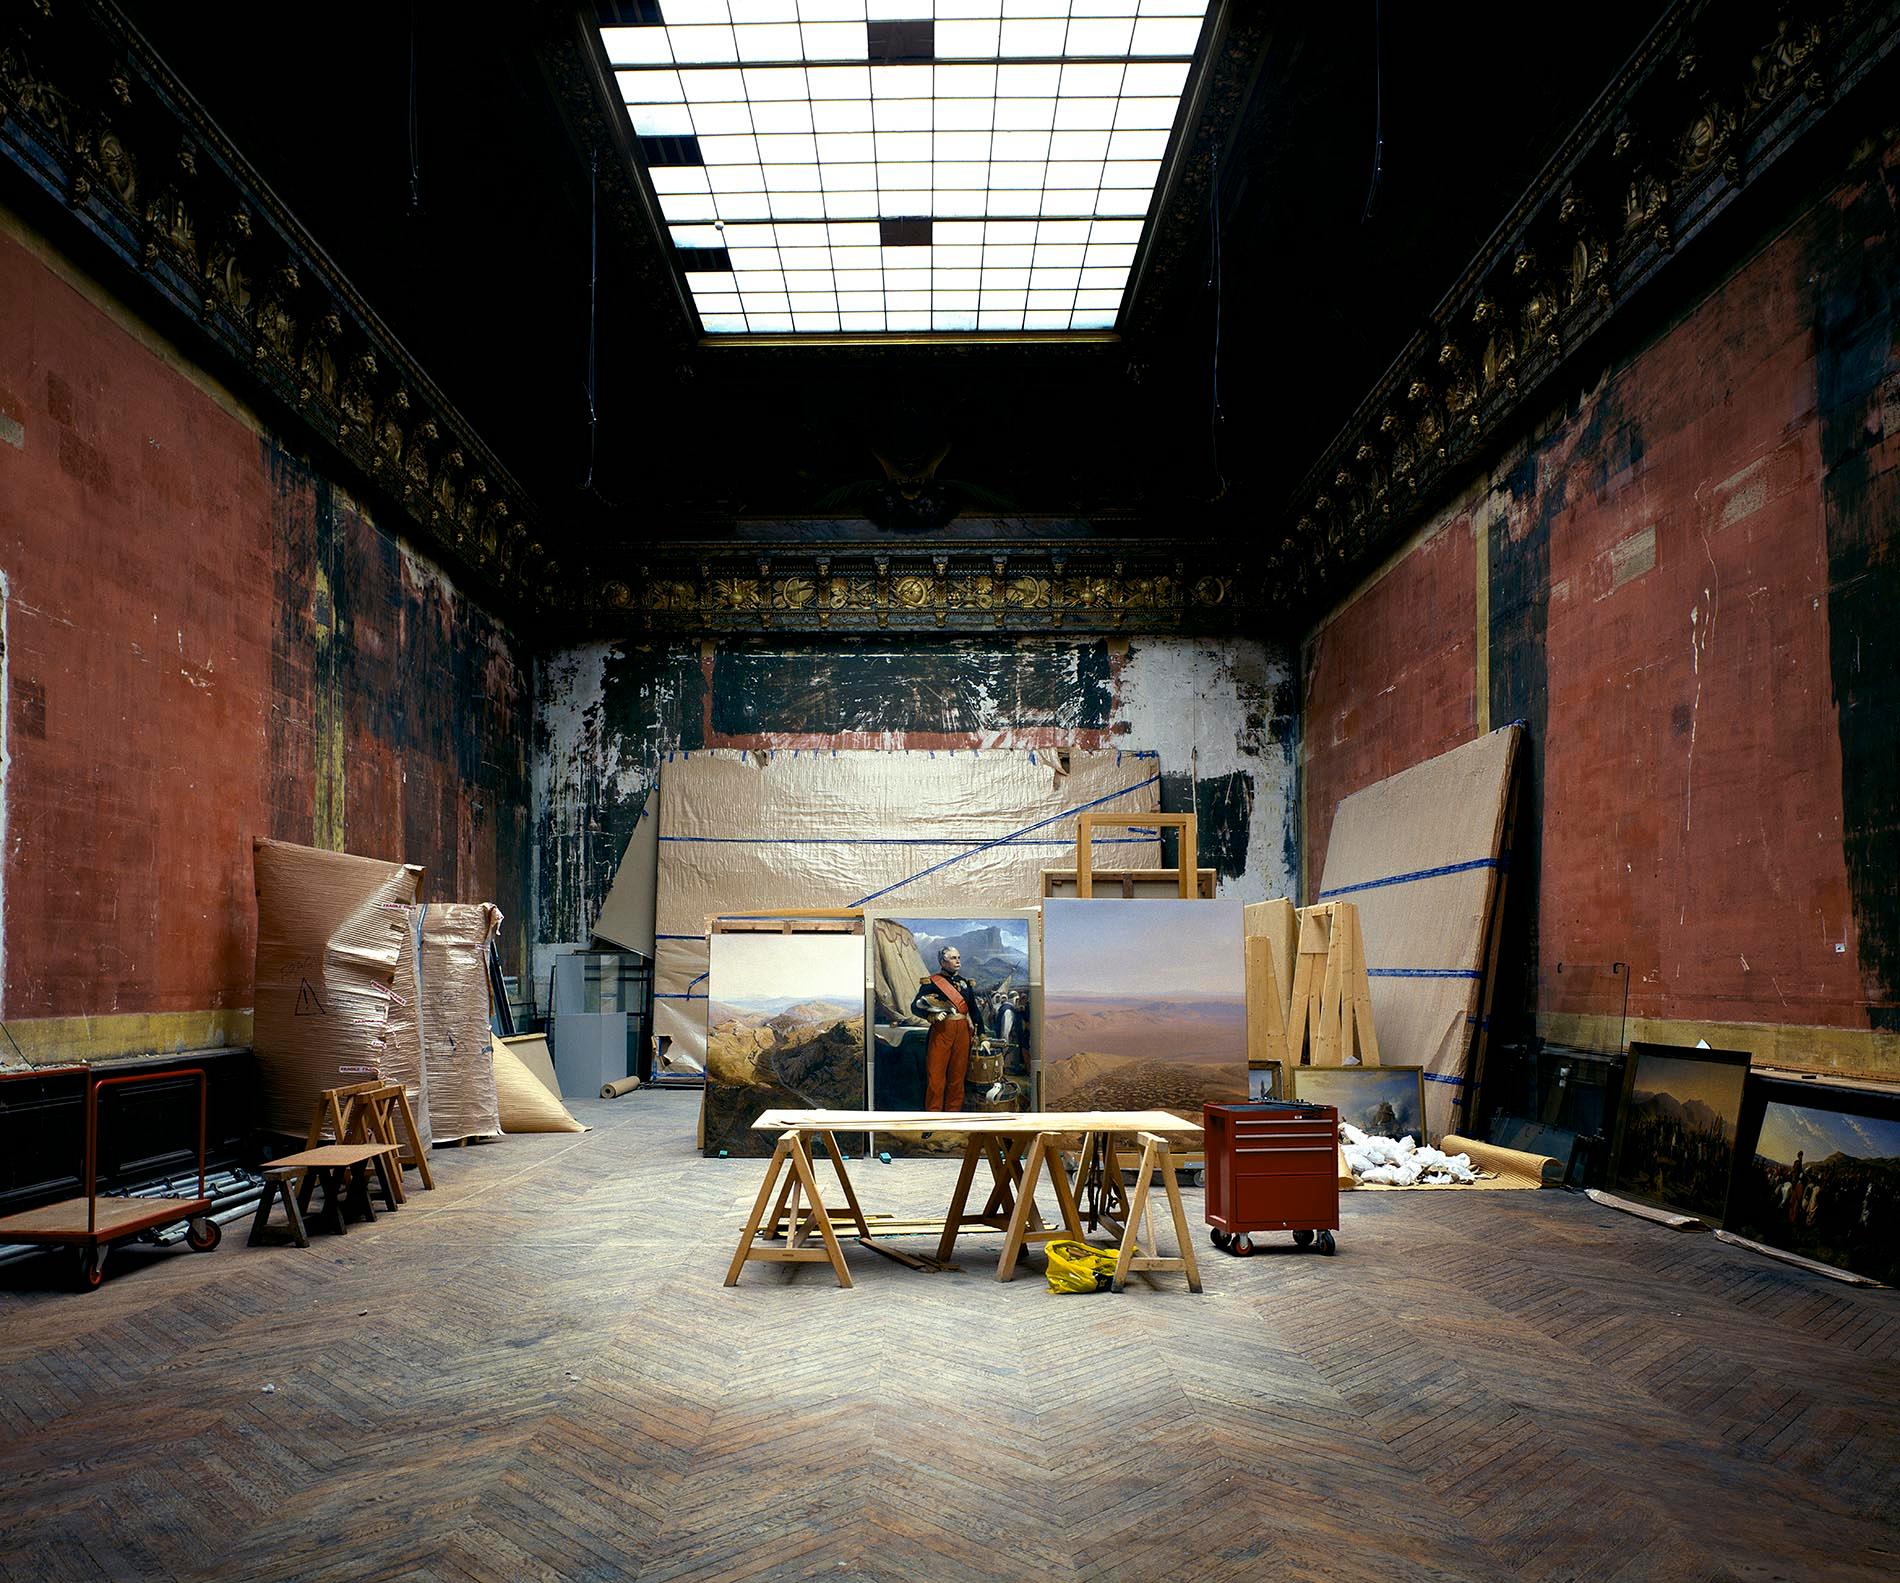 Versailles II, Frankreich 2003 - Innenraum des Palastes mit Gemälden, rote Wände